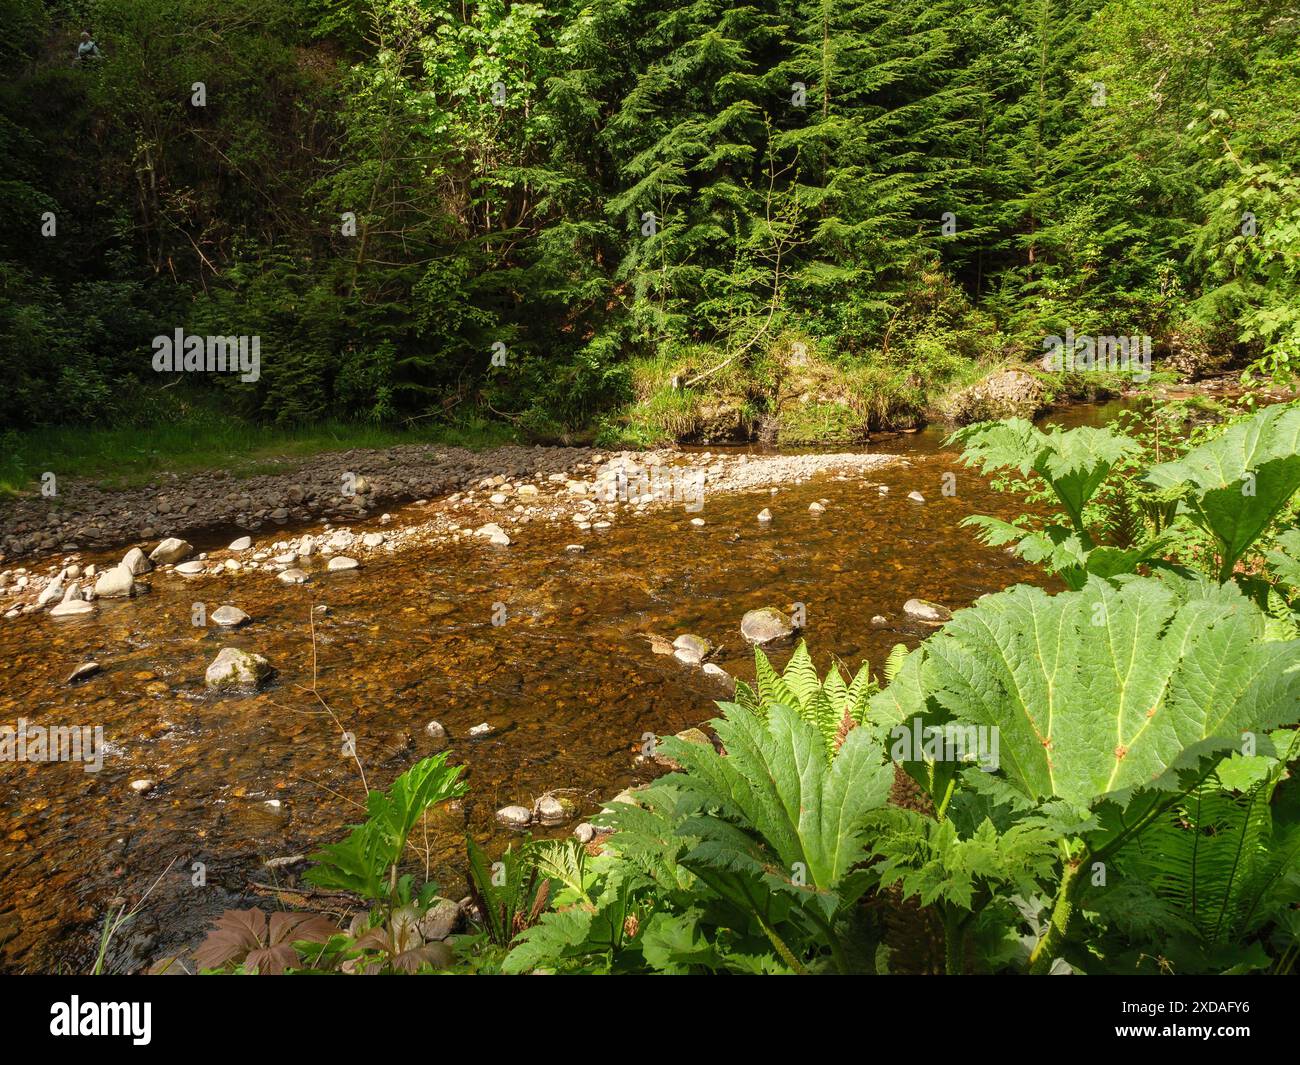 Ein ruhiger Fluss fließt durch einen dichten grünen Wald, umgeben von großen Steinen, inverness, schottland, Großbritannien Stockfoto